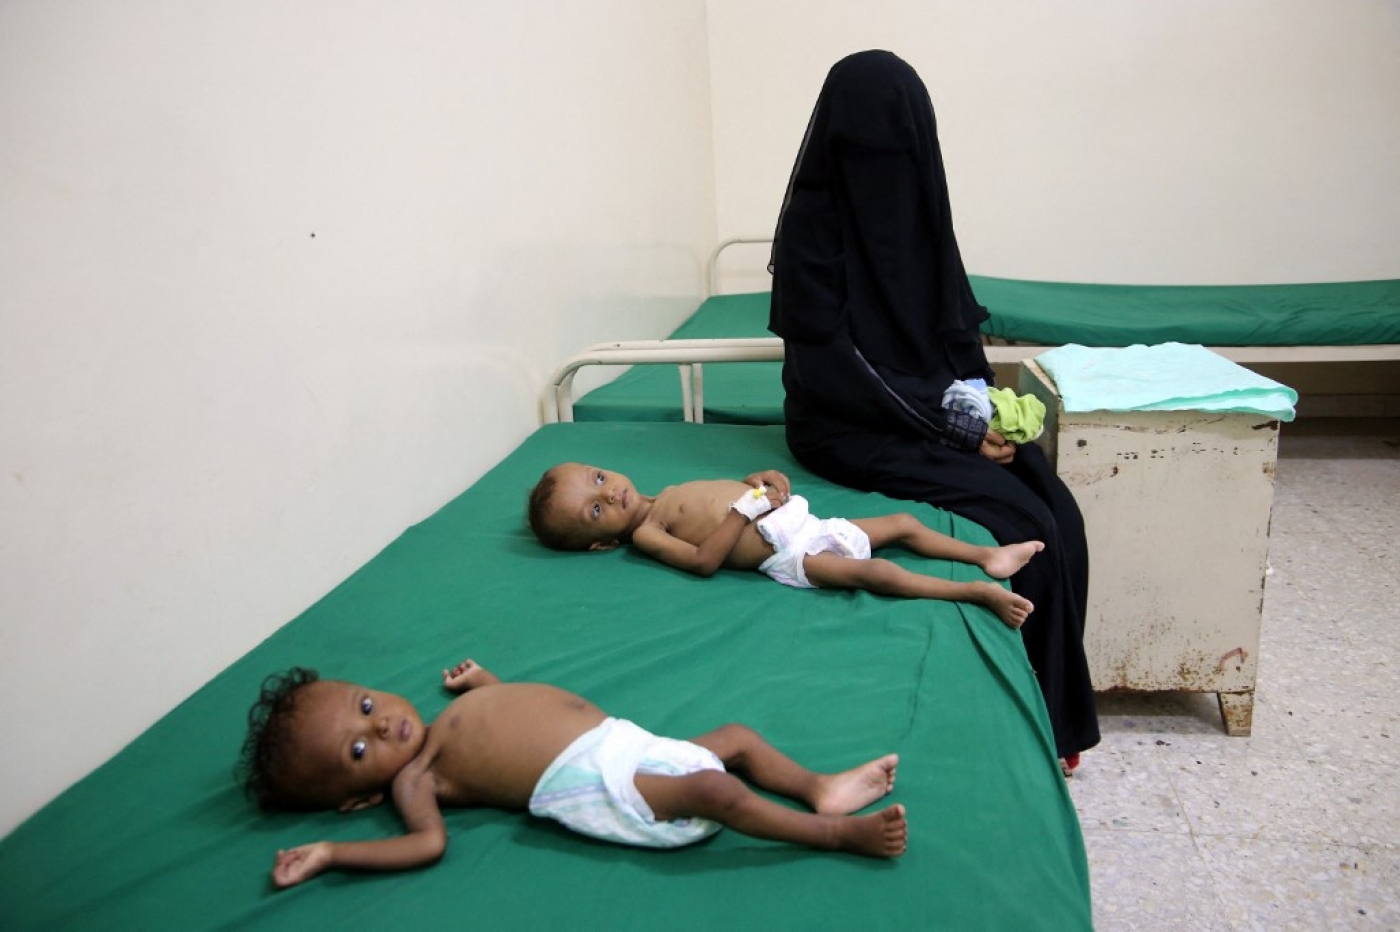 Une femme est assise à côté d’un enfant souffrant de malnutrition, dans un centre de traitement de la malnutrition, dans le village de Hays, dans la province occidentale de Hodeida, ravagée par la guerre au Yémen, le 11 juin 2022 (AFP/Khaled Ziad)